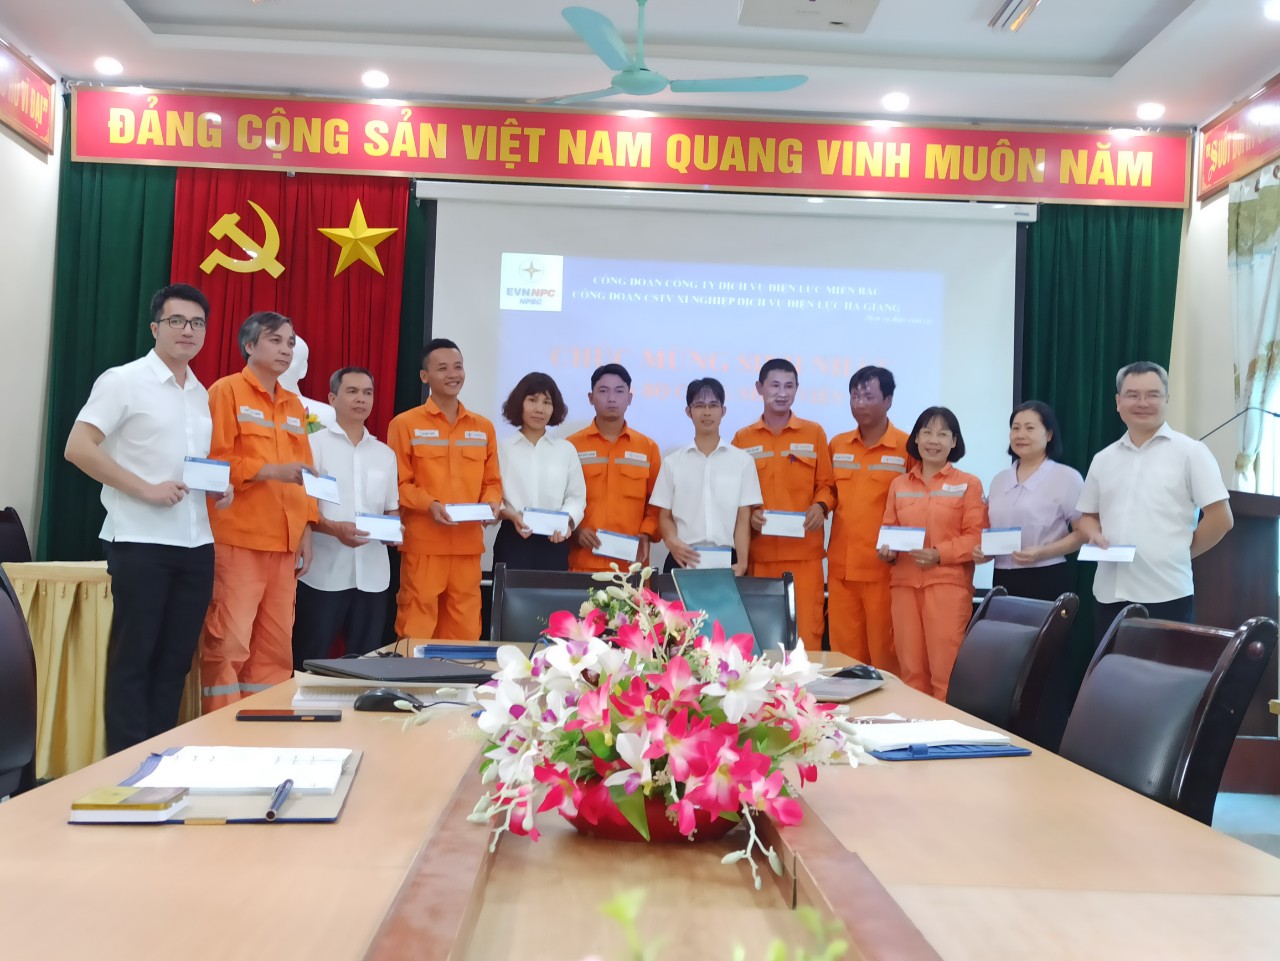 Xí nghiệp Dịch vụ Điện lực Hà Giang tổ chức sinh nhật cho CBCNV